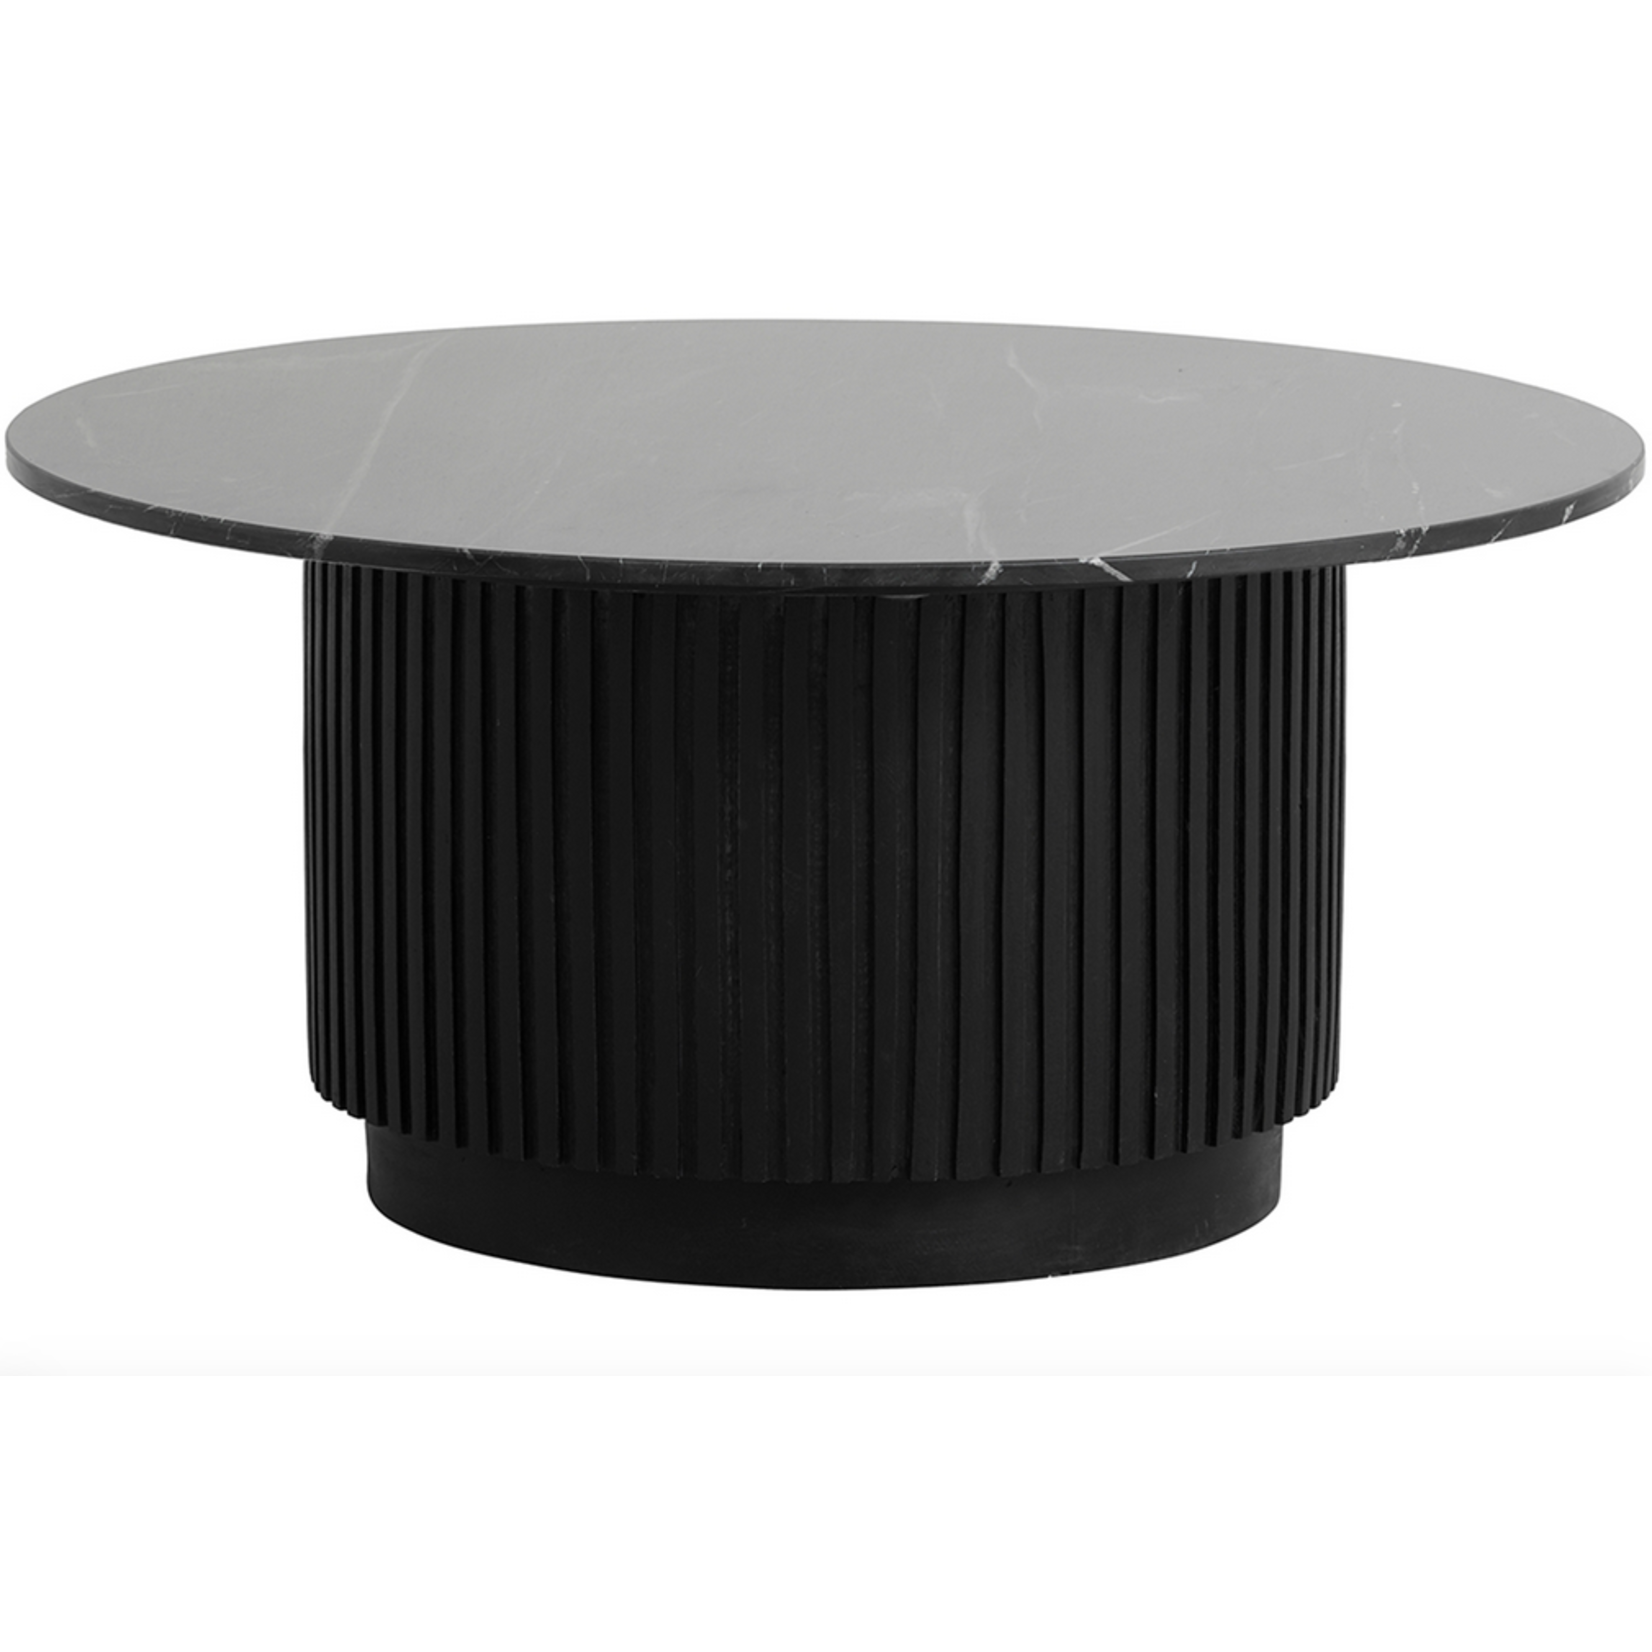 Fremont Salontisch mit schwarzer Marmorplatte D75H41cm